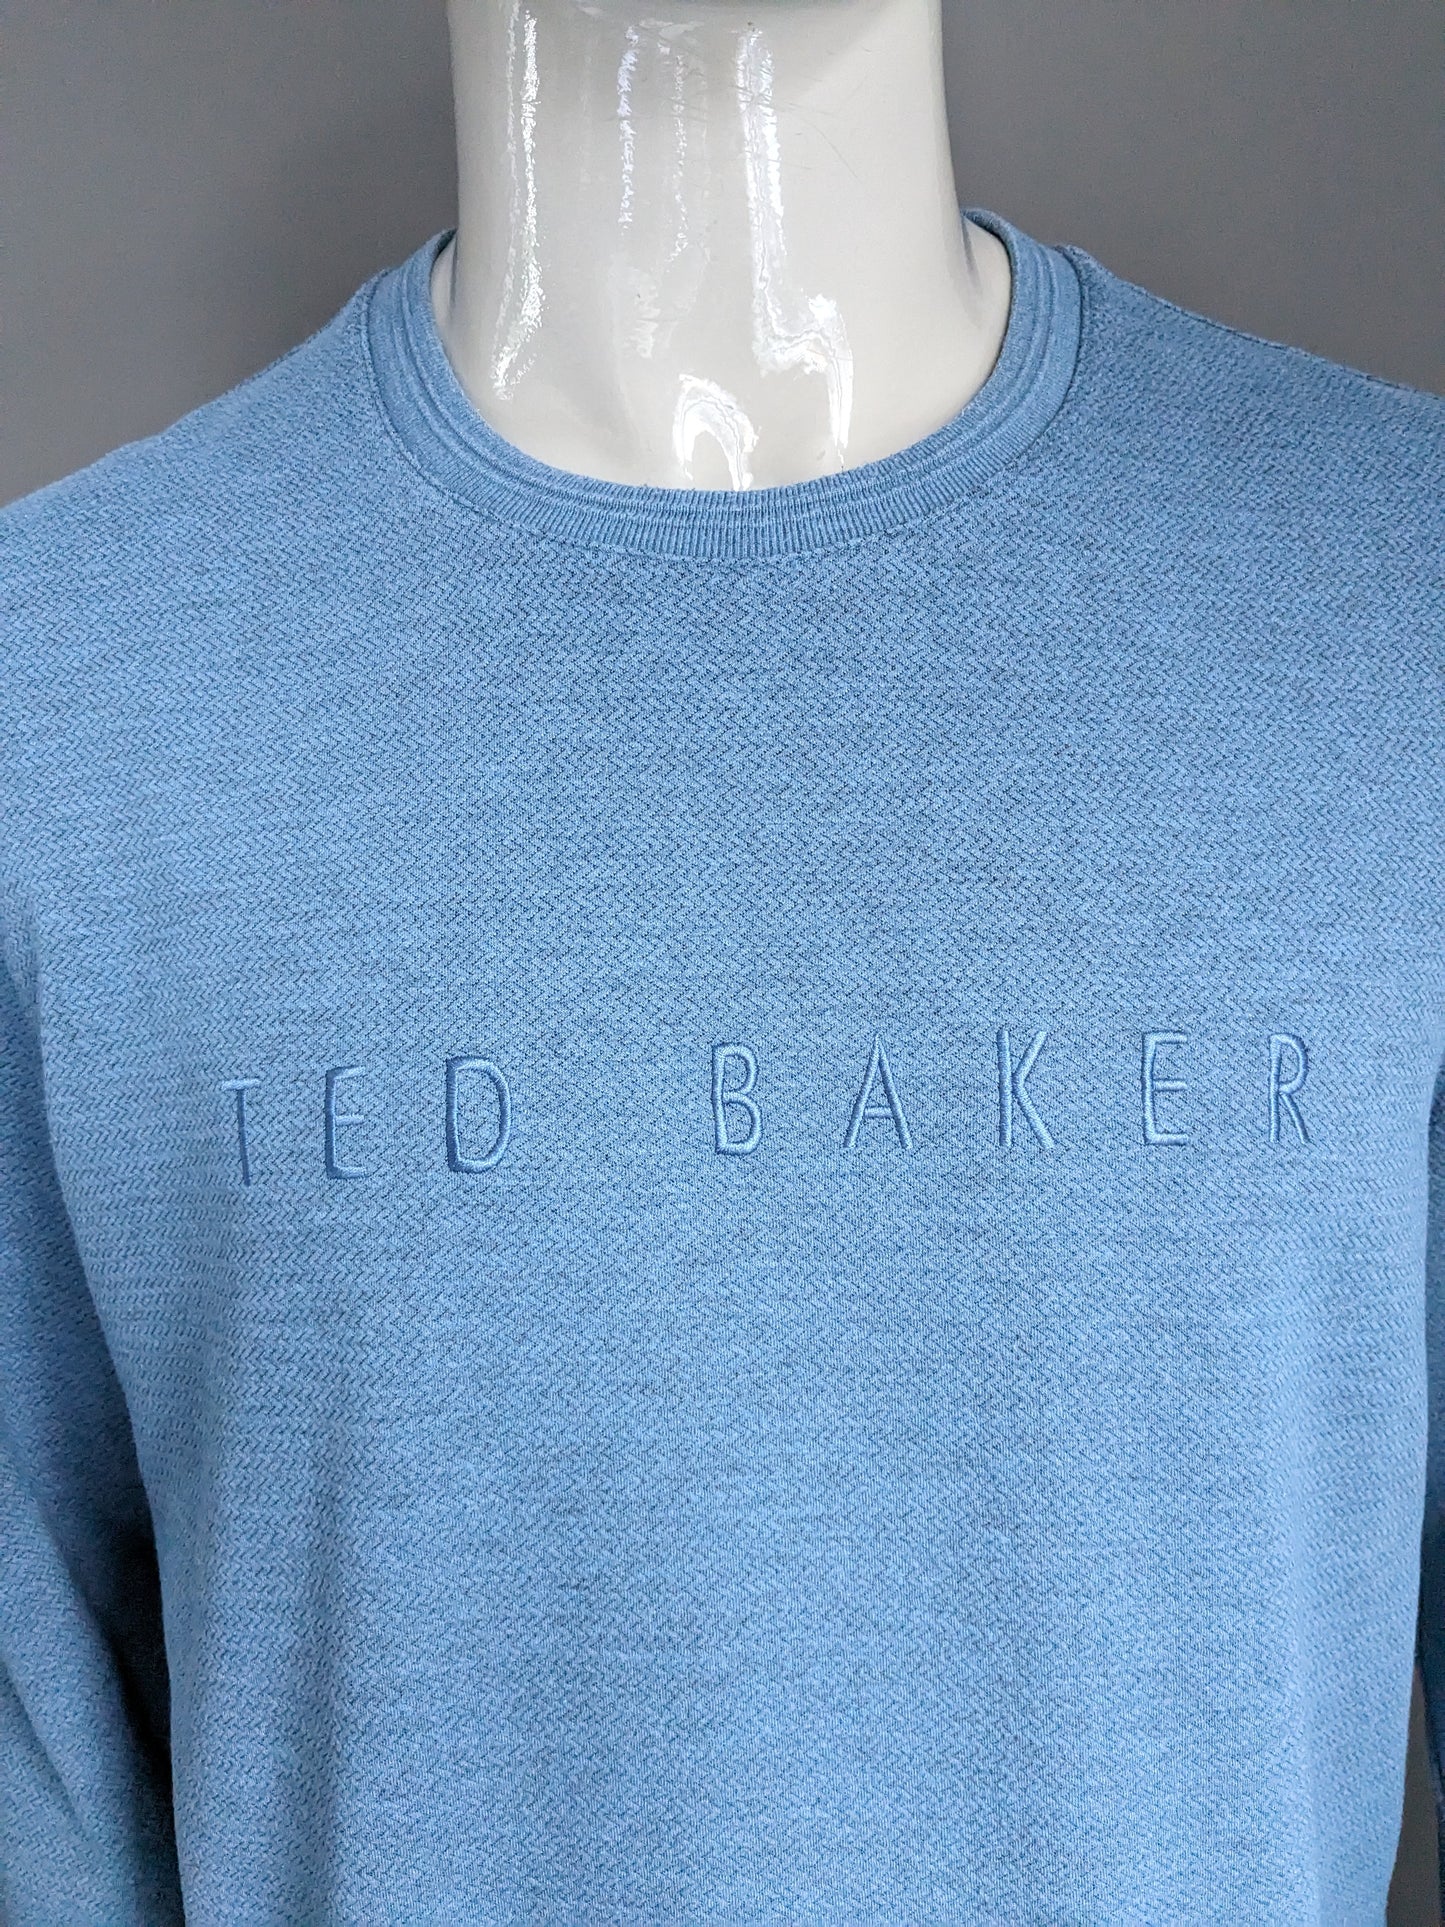 Ted Baker suéter casual. Motín de espiga azul. Tamaño xl.